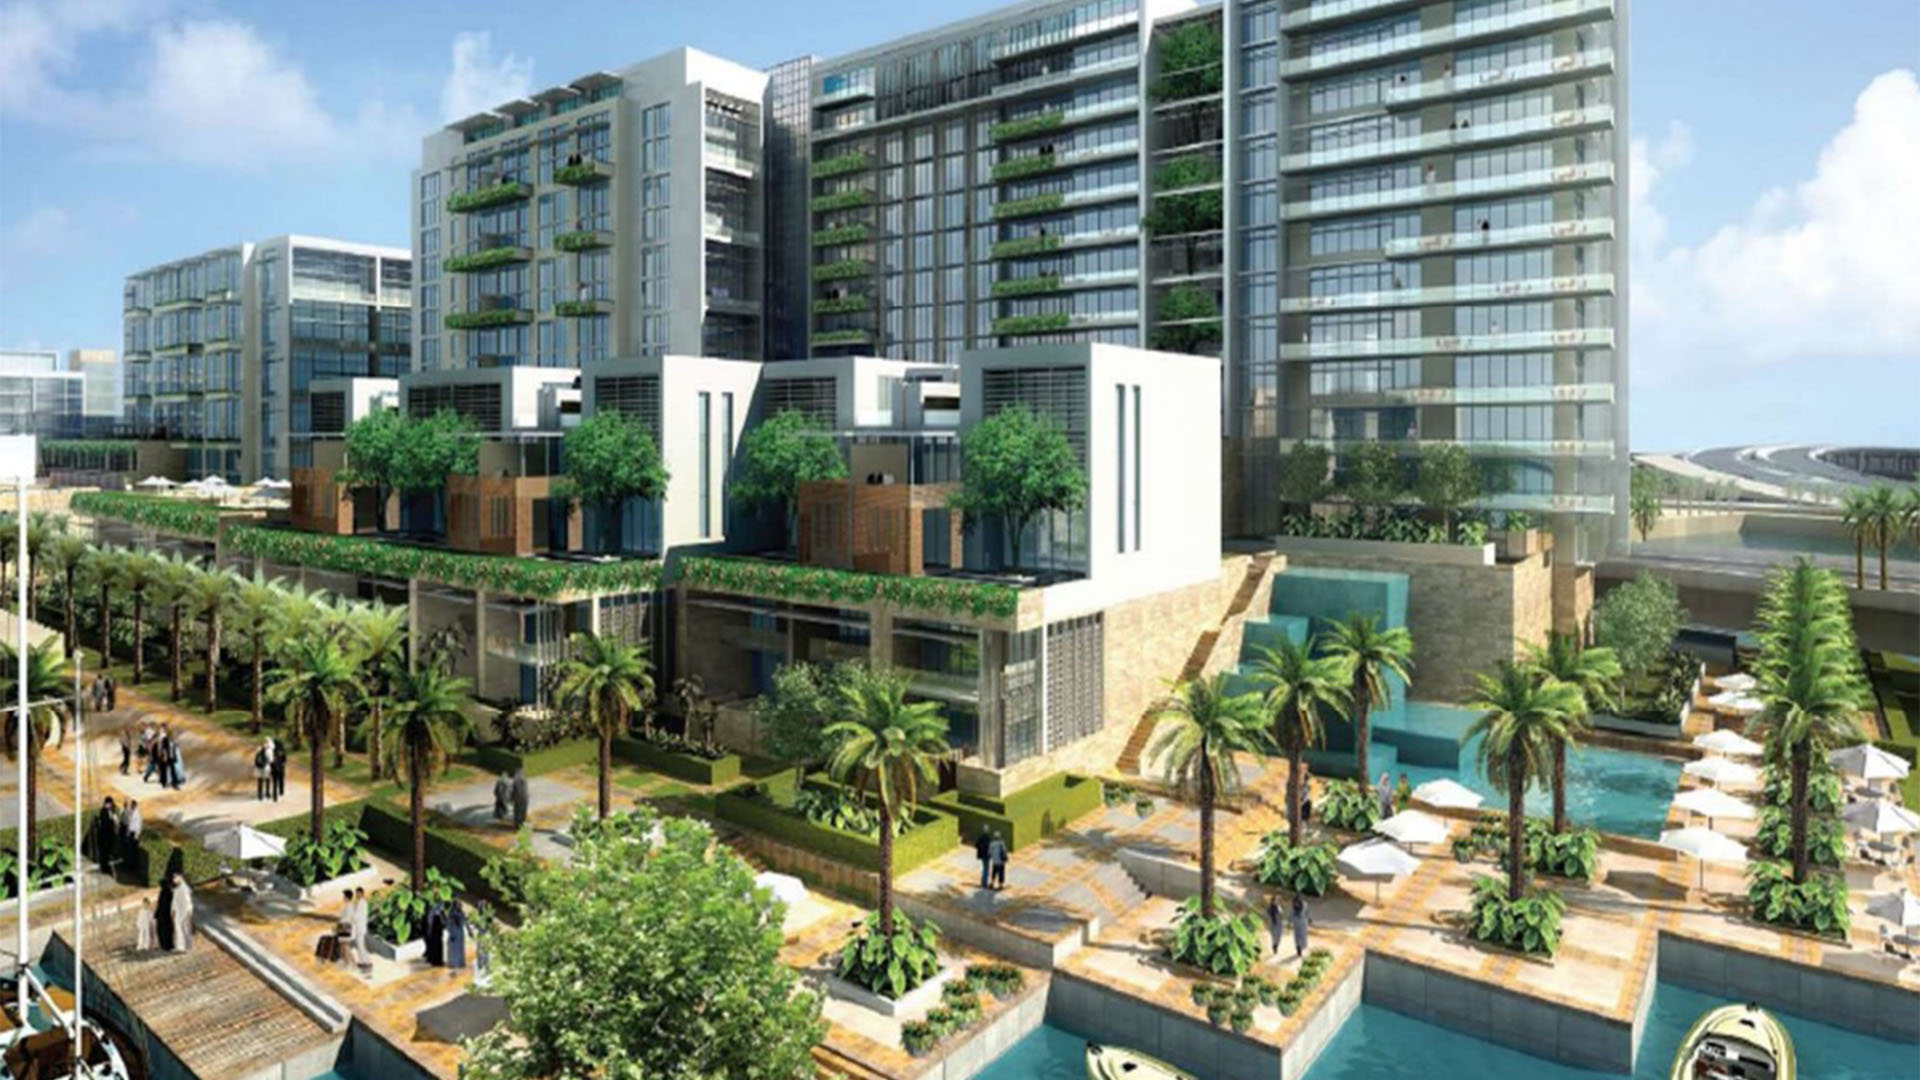 AL ZEINA by Aldar Properties in Al Raha Beach, Abu Dhabi, UAE